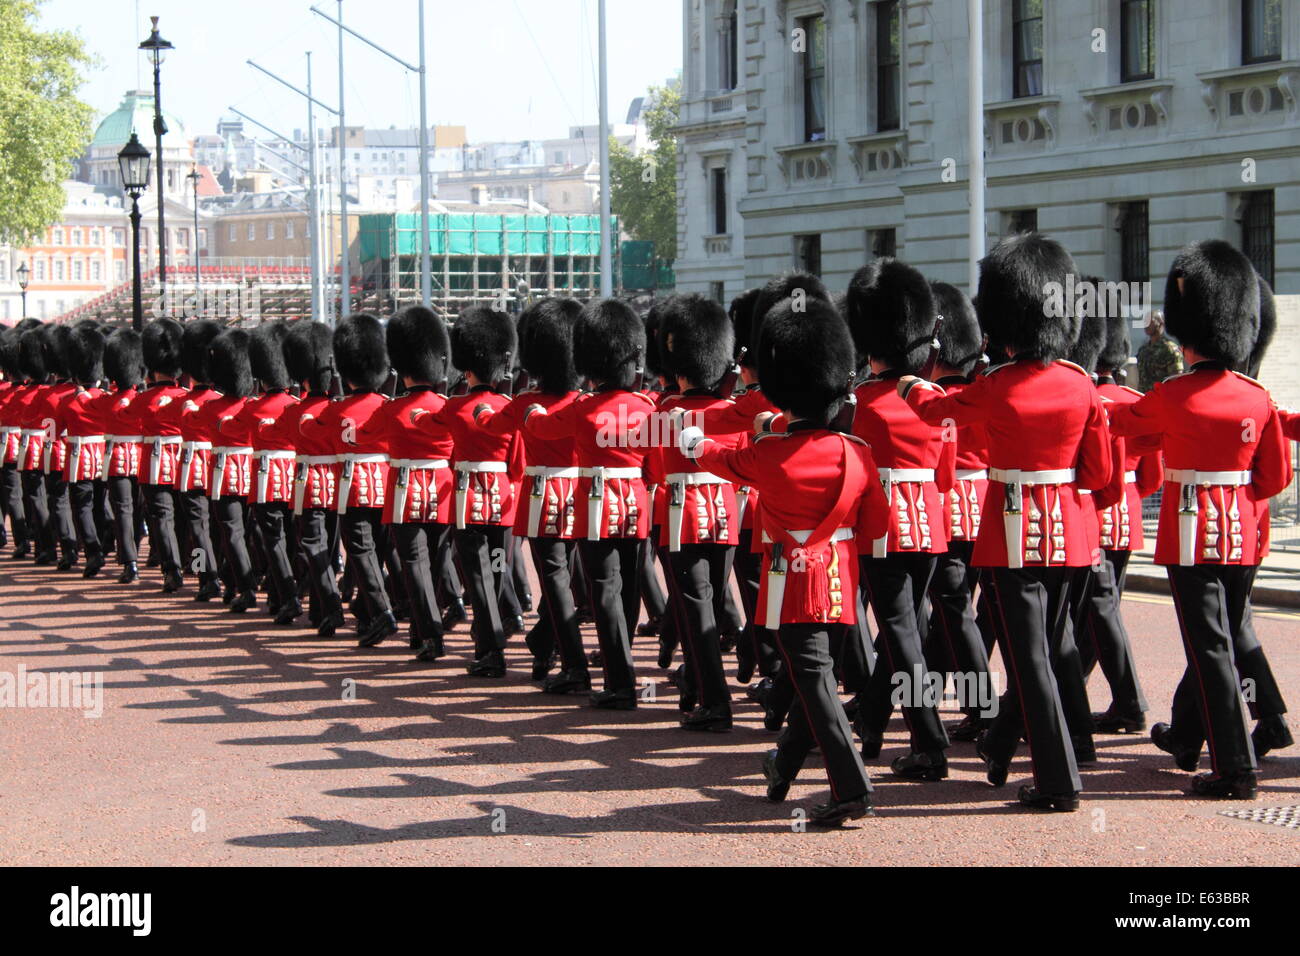 Londres - le 21 mai : la garde royale marche vers le palais de Buckingham pour le changement de la garde le 21 mai 2010 à London, UK Banque D'Images